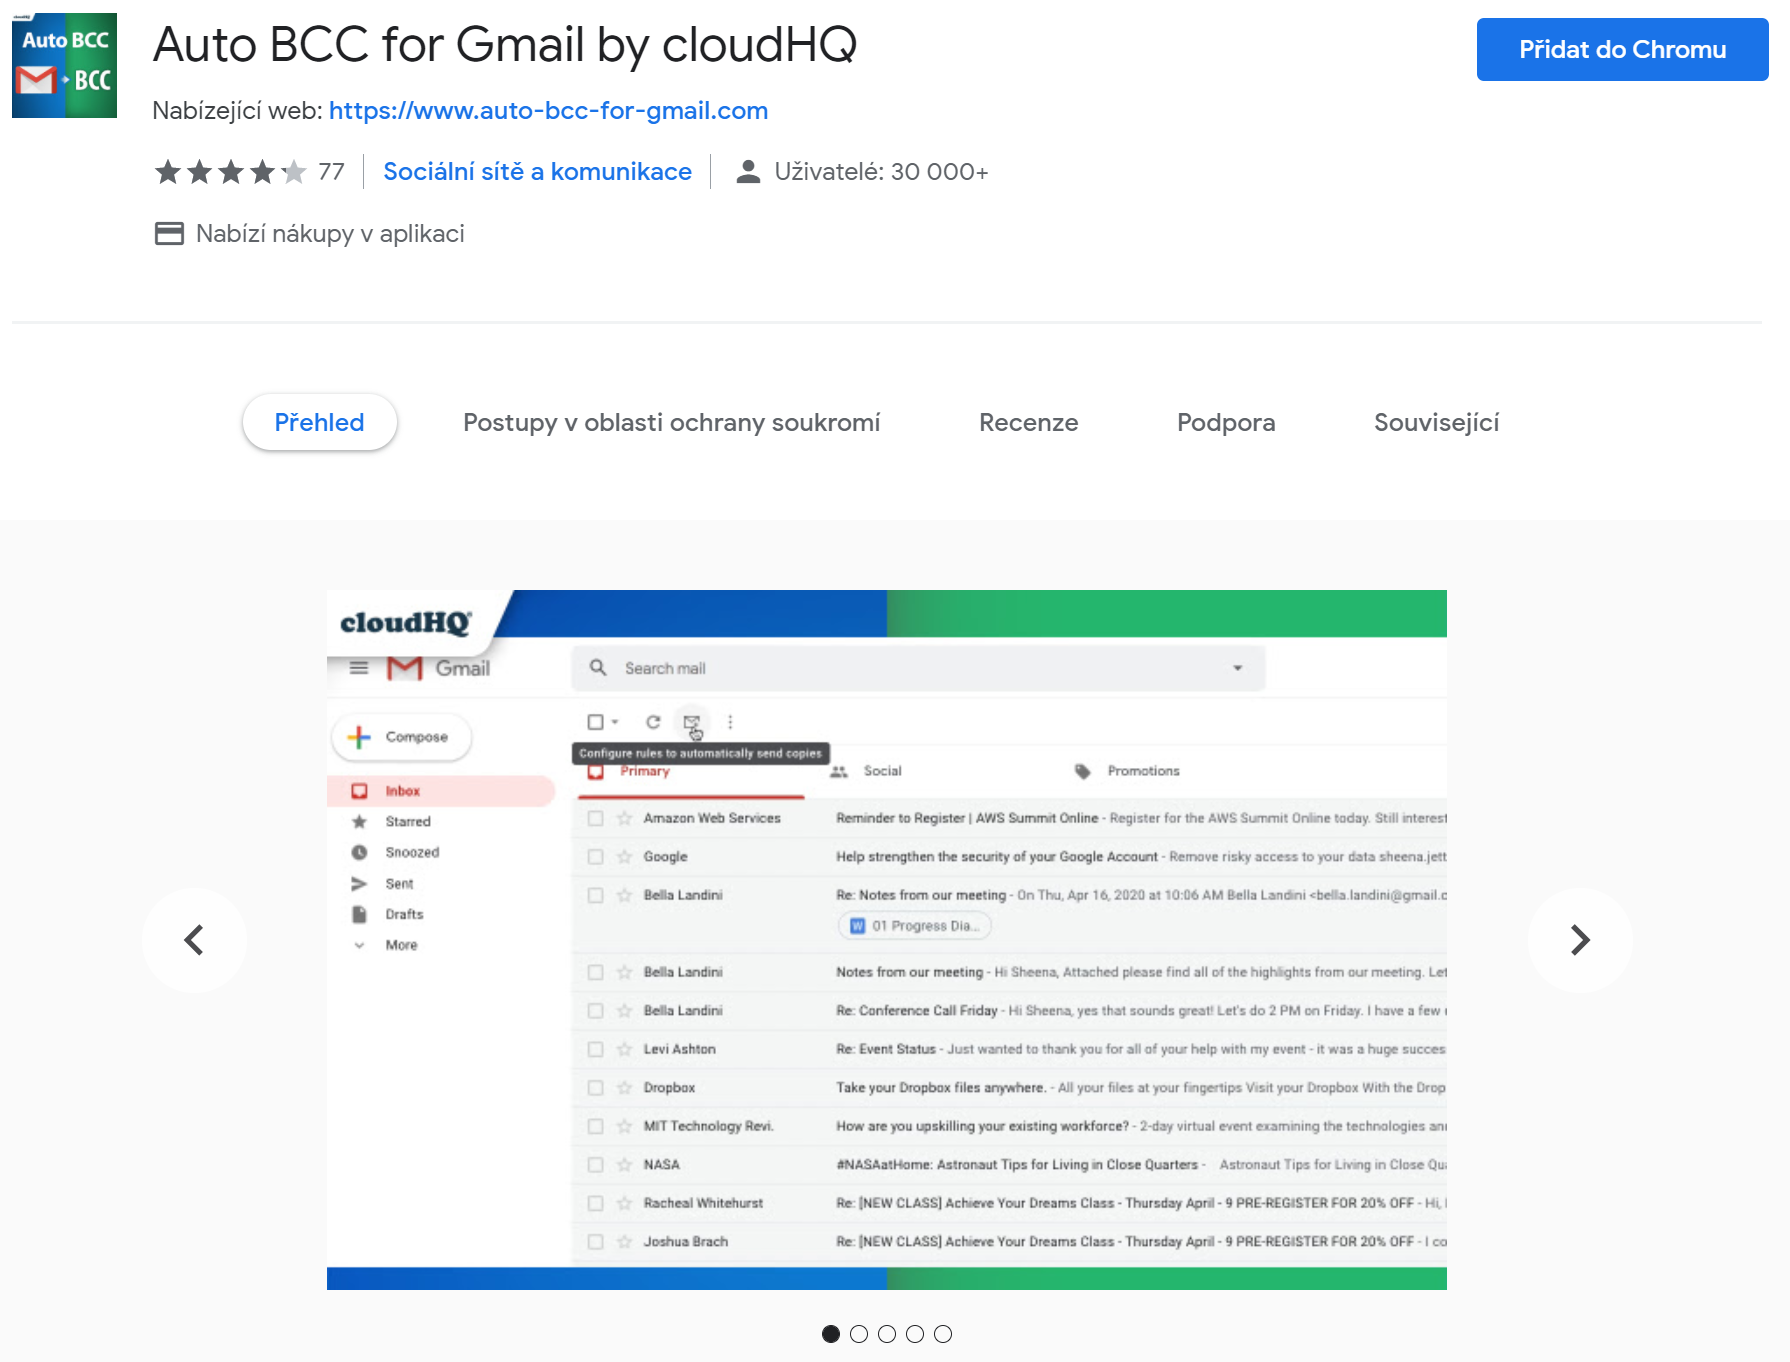 Snímek obrazovky doplňuje Auto BBC for Gmail v Chromu